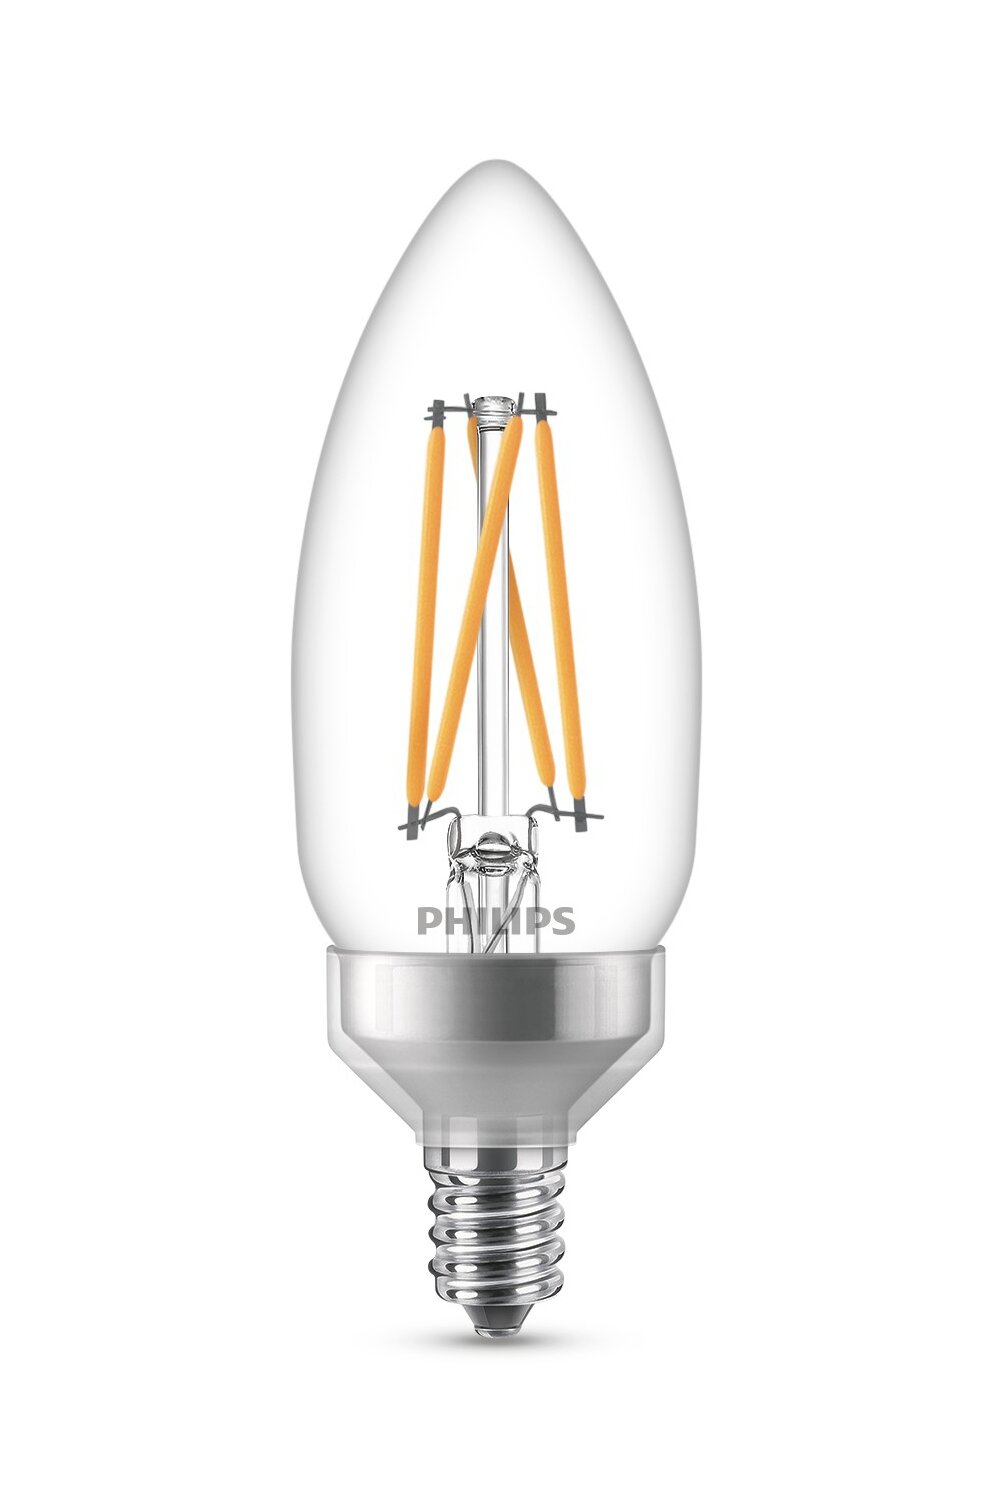 3 Philips 40W Equivalent Soft White B11 Candlelabra Base LED Light Bulb 